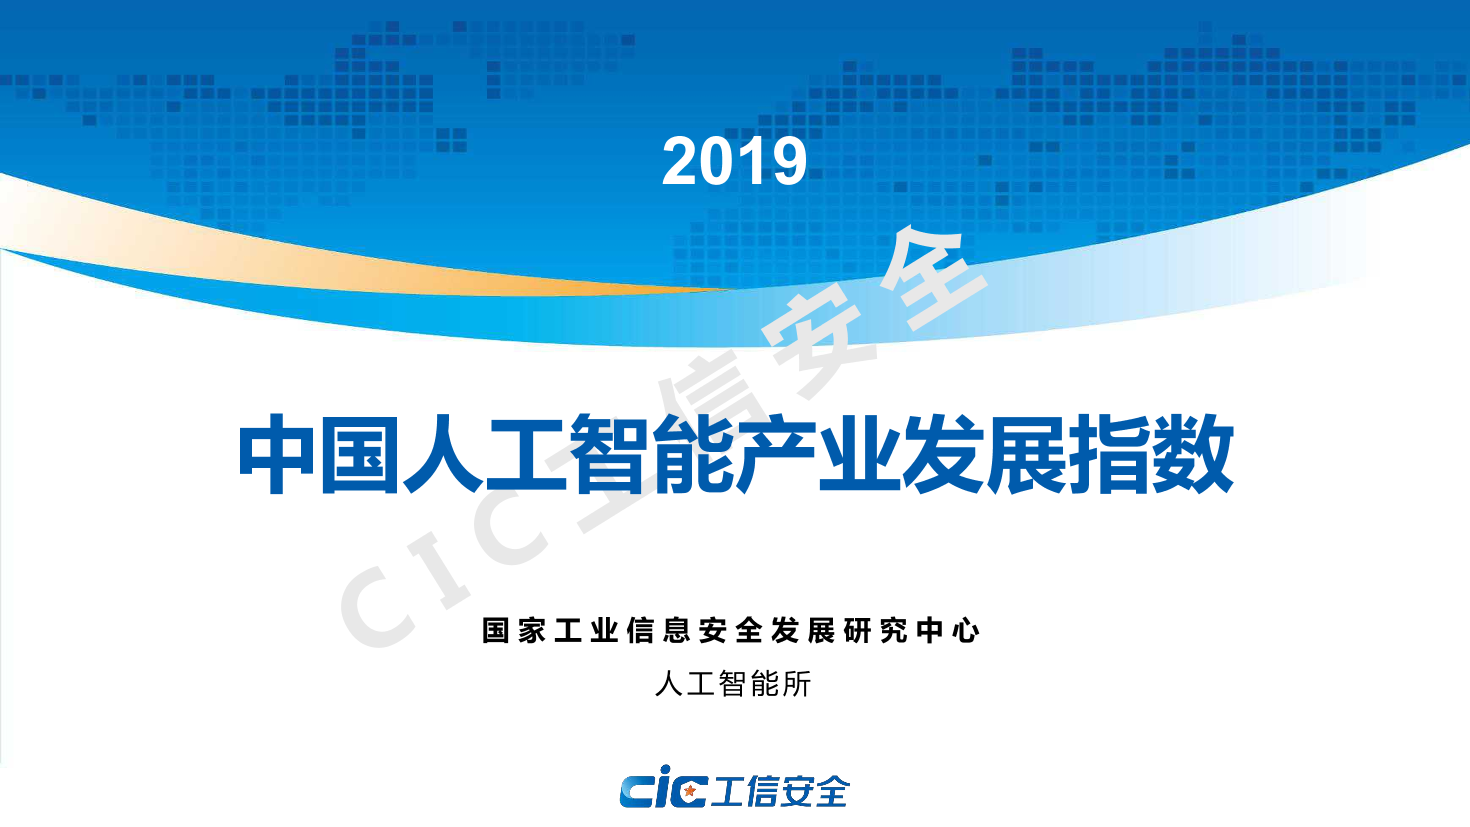 2019年中国人工智能产业发展指数-工信安全-2019.9-32页2019年中国人工智能产业发展指数-工信安全-2019.9-32页_1.png